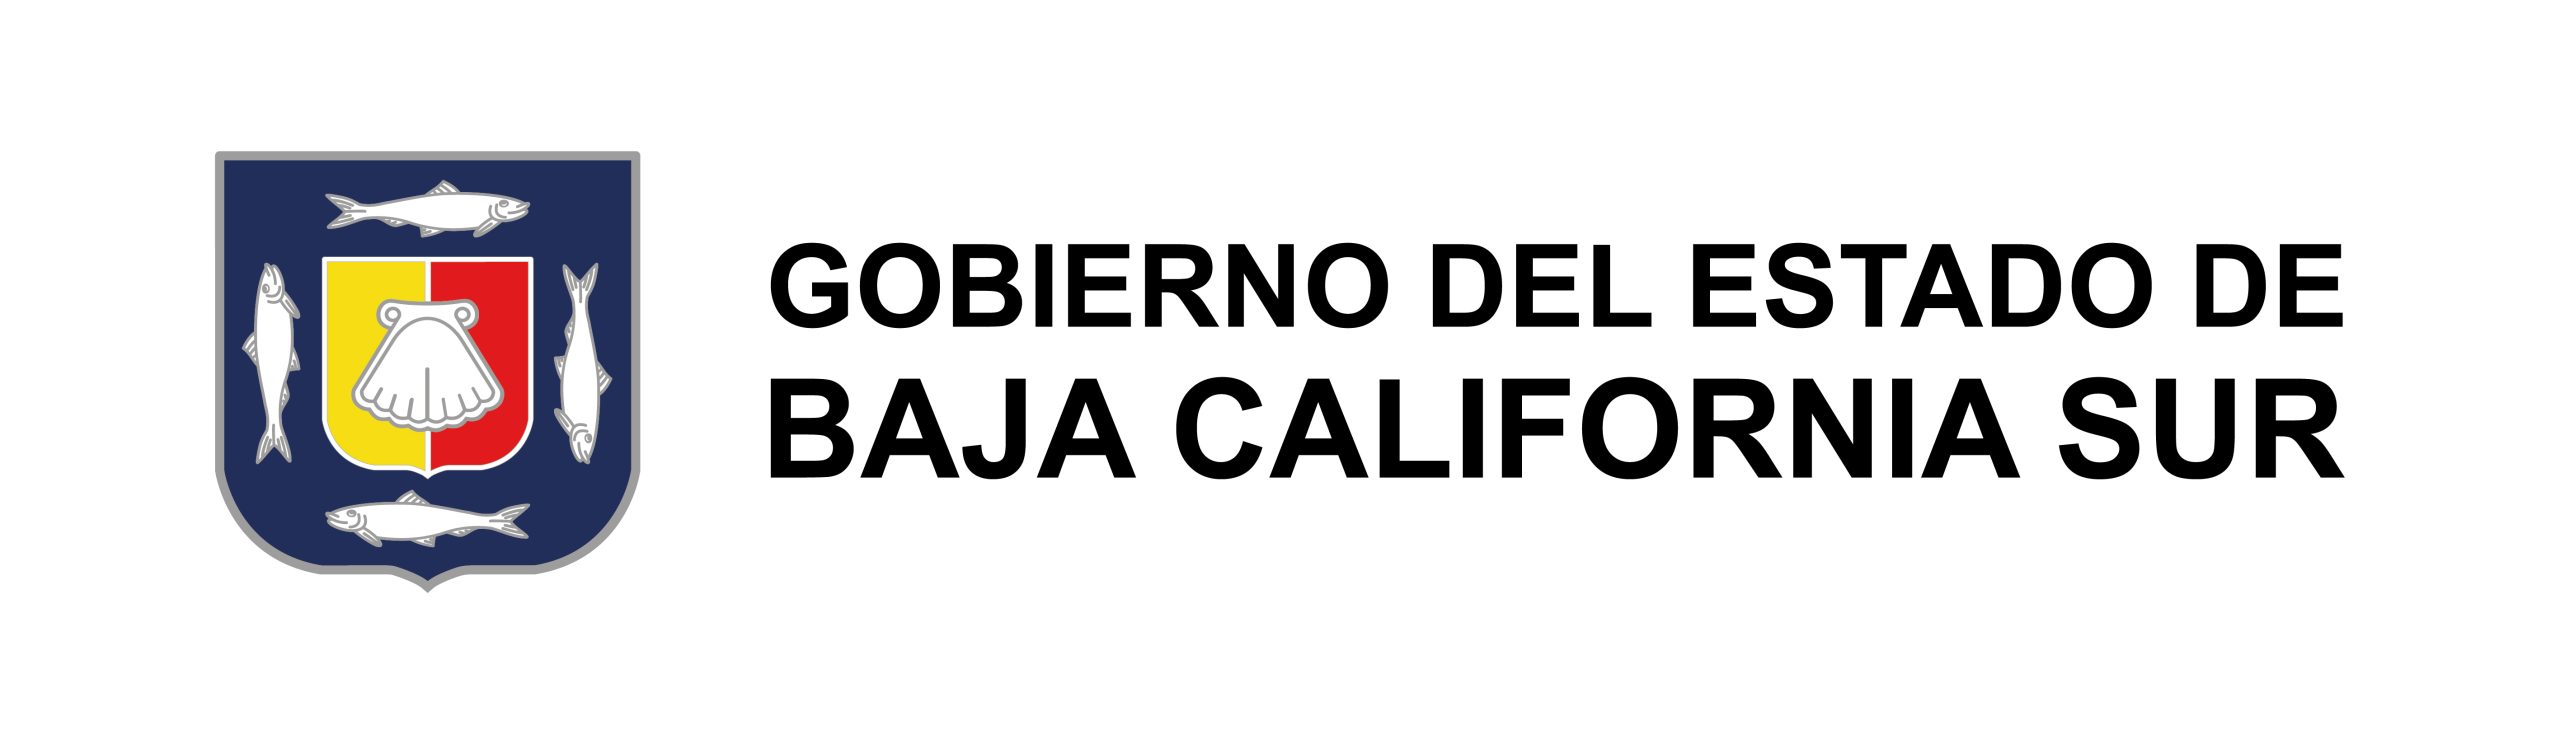 gobierno de baja california sur logo 202